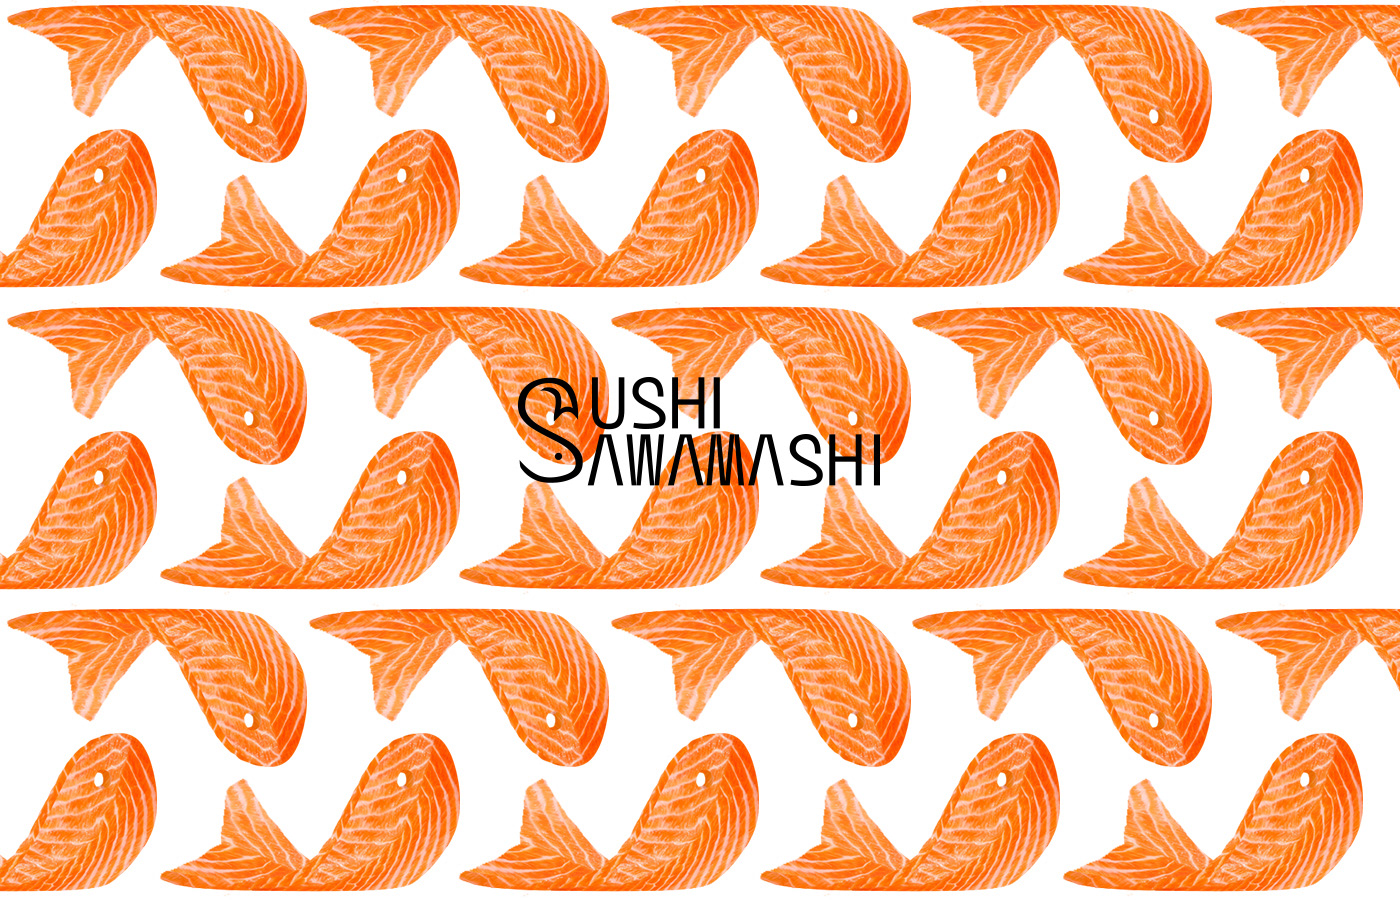 brand brand identity identity mondaycreative mondaystudio Packaging Sushi vietnamdesigner visual identity vupham